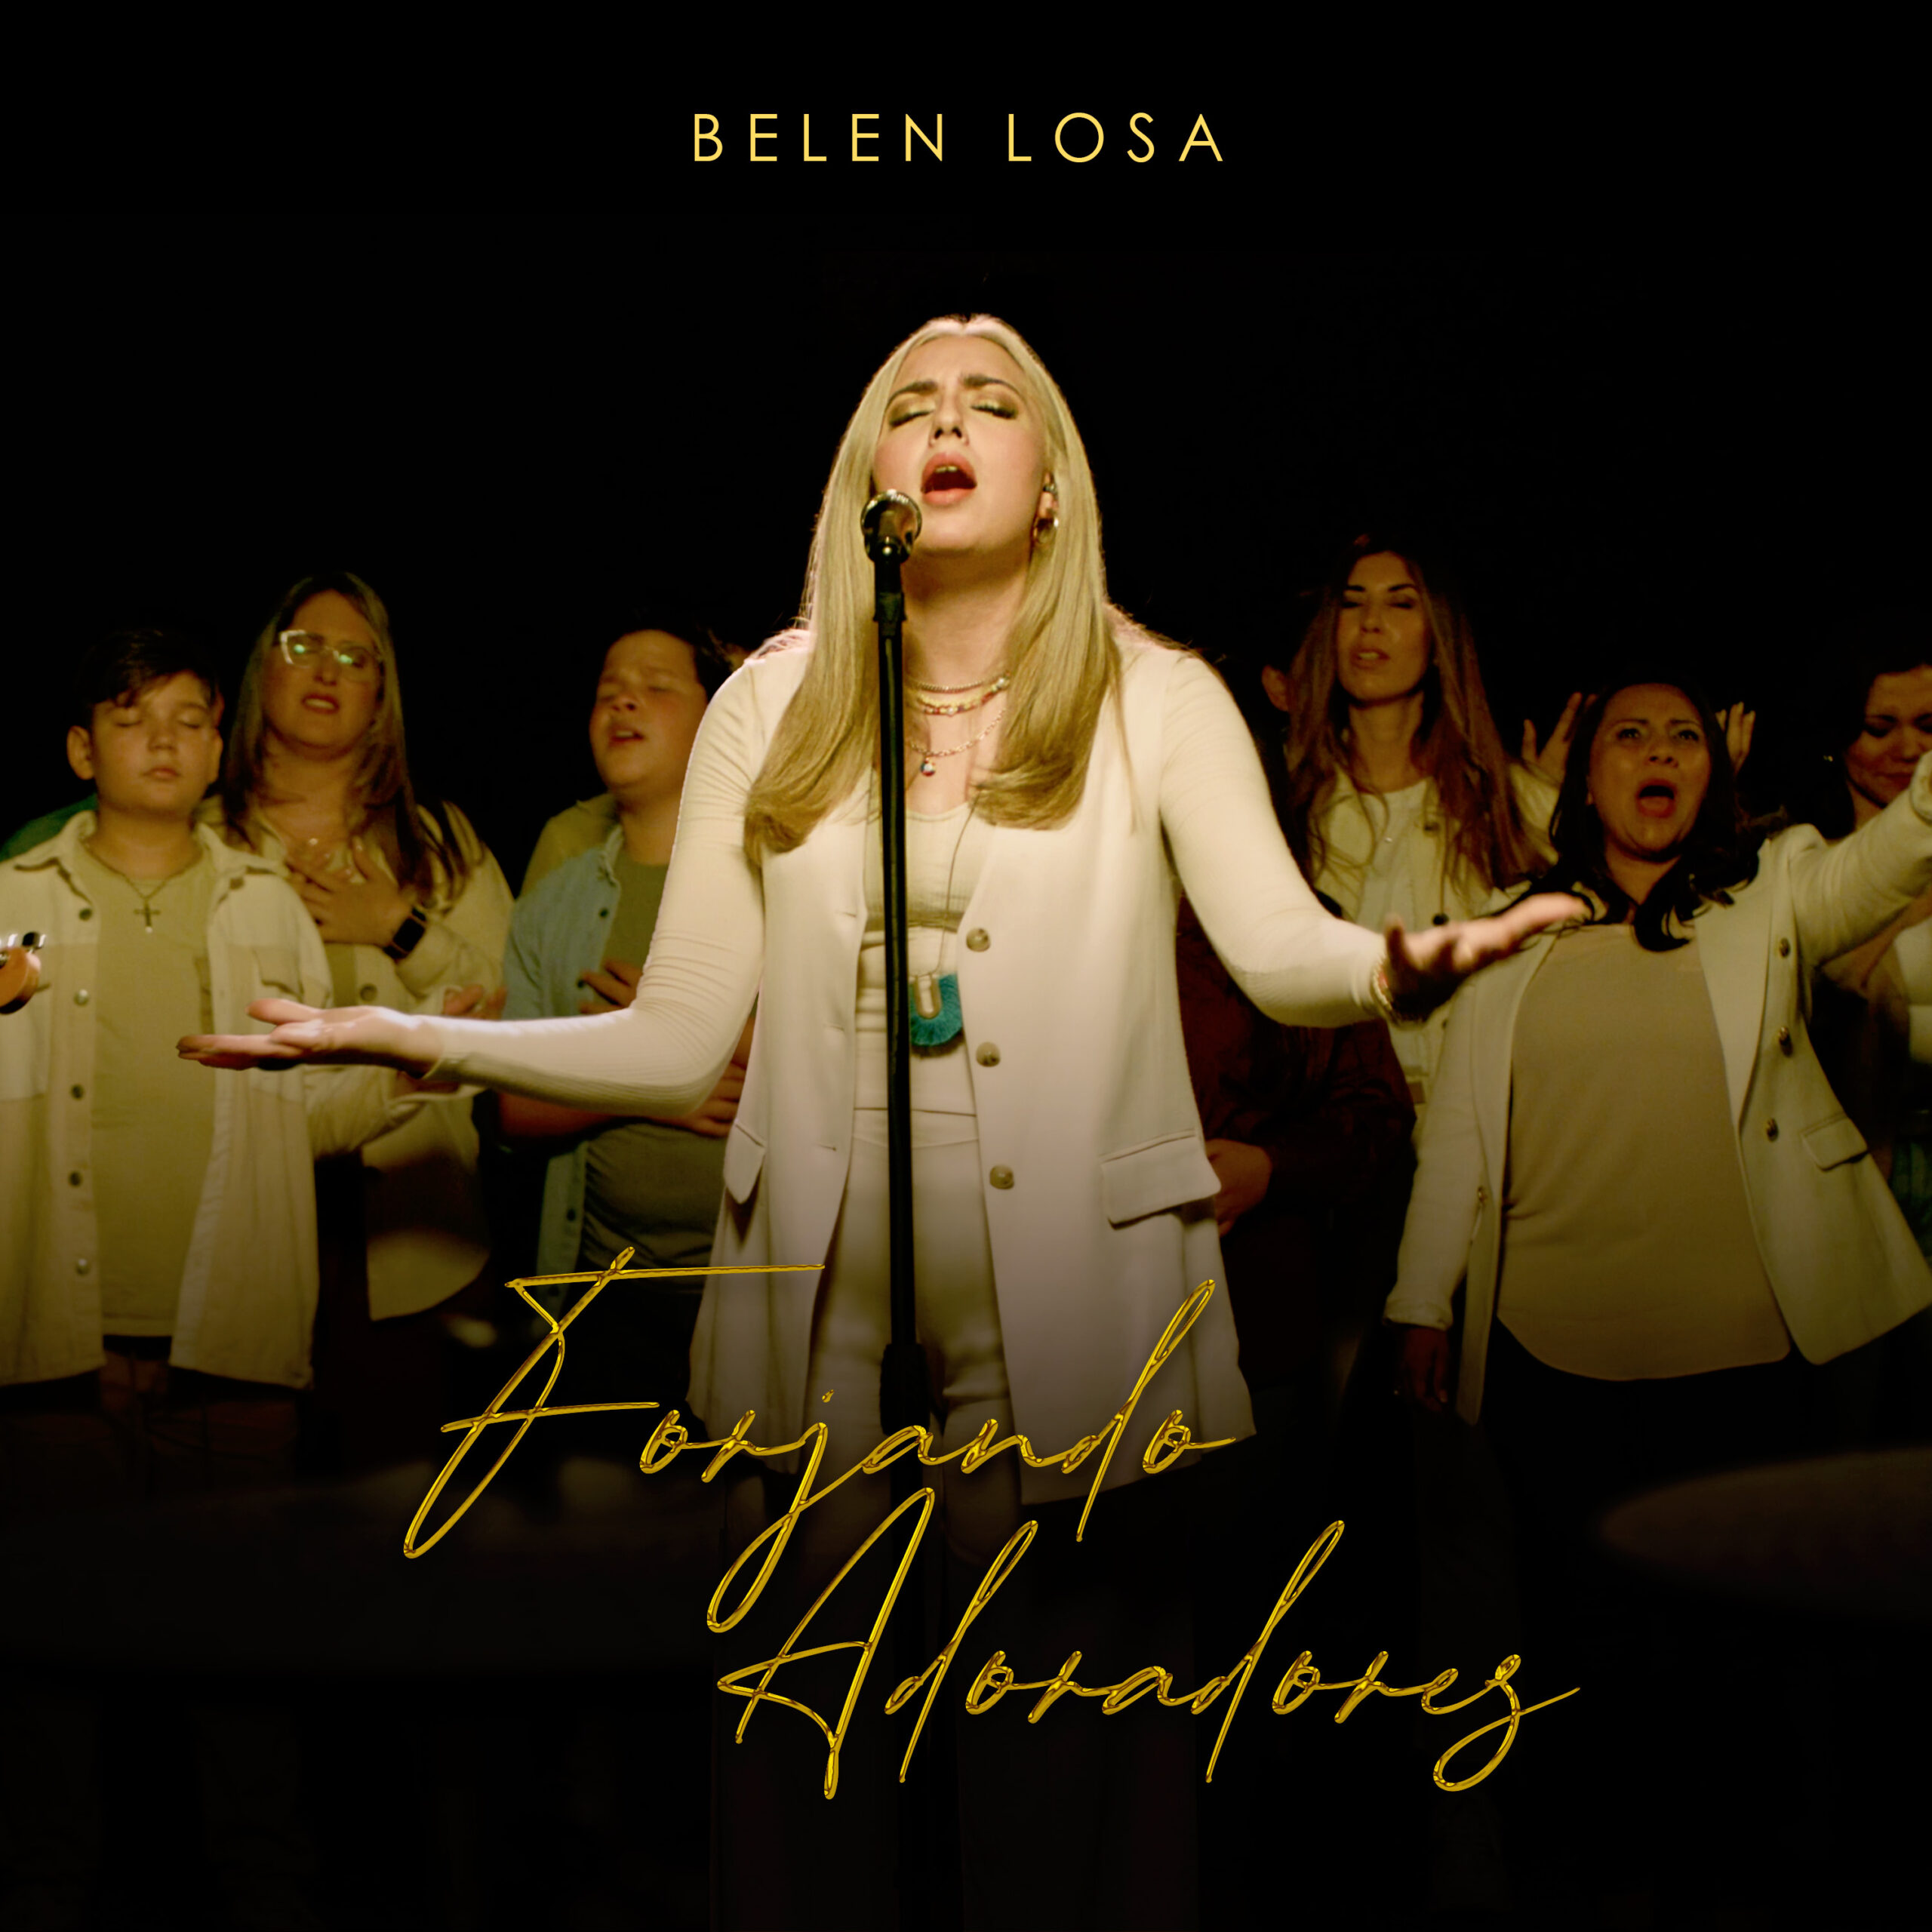 BELÉN LOSA estrena nuevo EP “Forjando Adoradores”